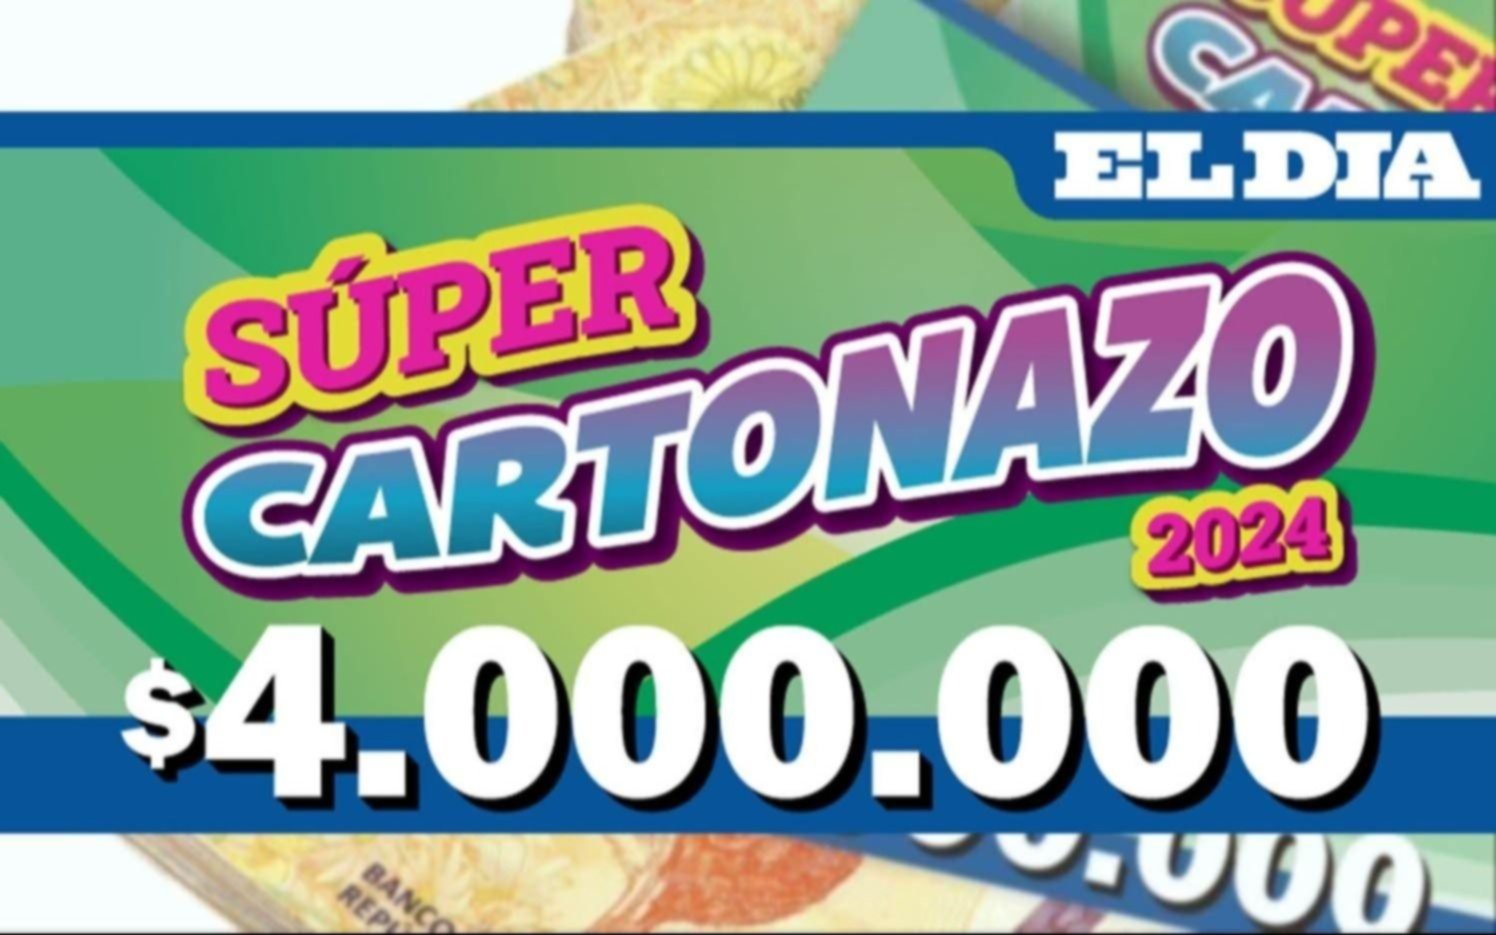 Jugá y ganá $4.000.000 con el Súper Cartonazo: los números que salieron este martes en el diario EL DIA